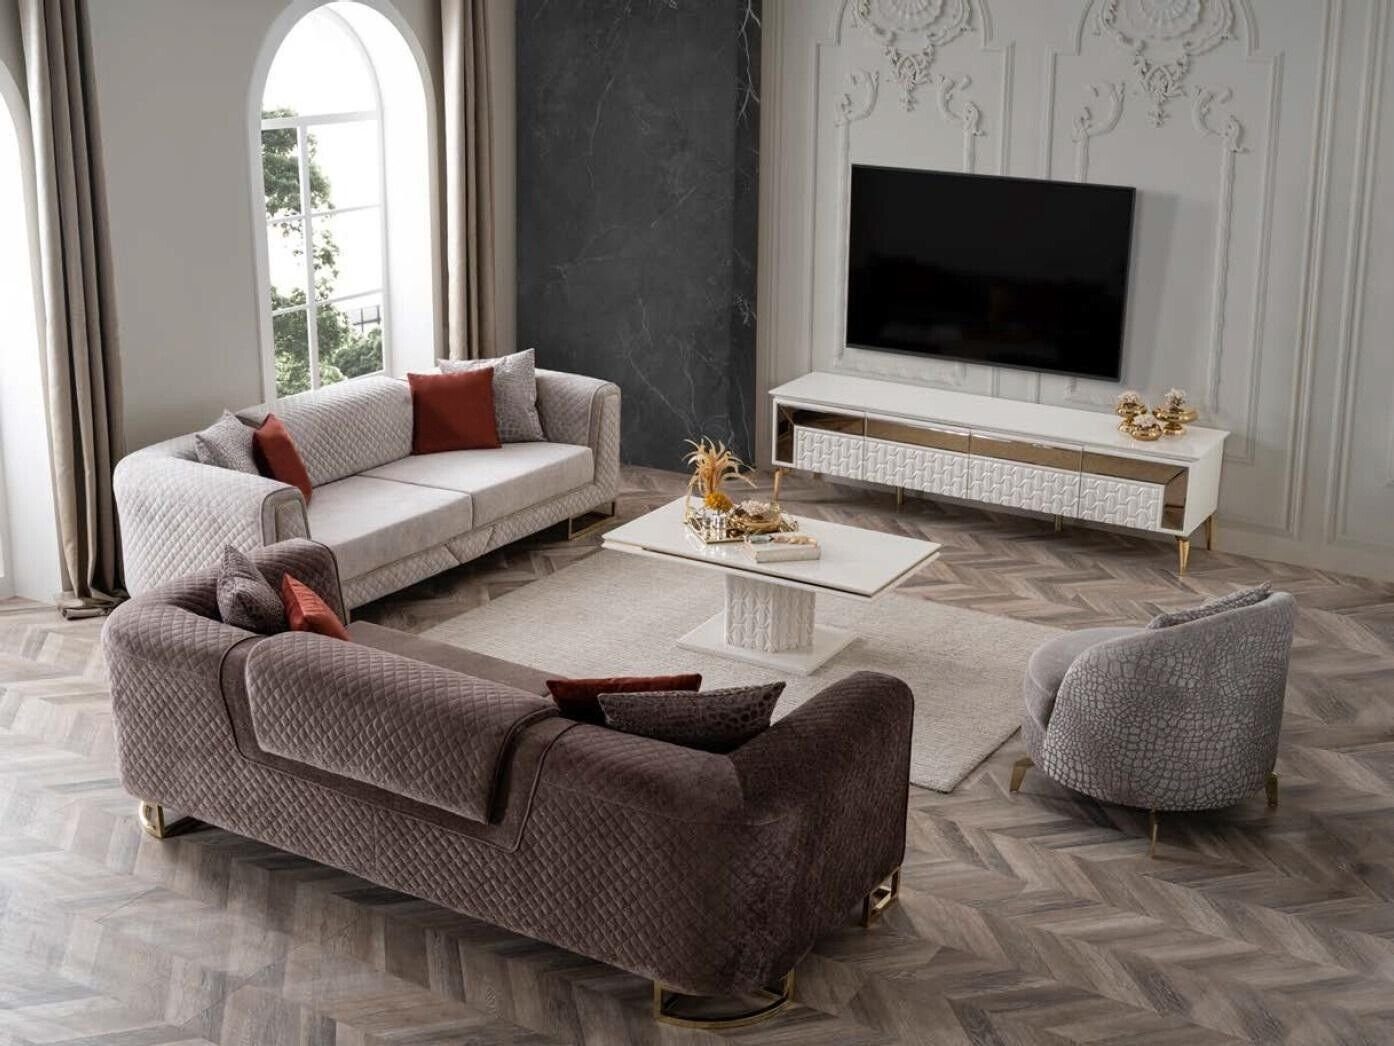 Couch Ecksofa in Europa Sofa Einrichtung Dreisitzer xxl Made Luxus Polster JVmoebel Möbel 240cm,